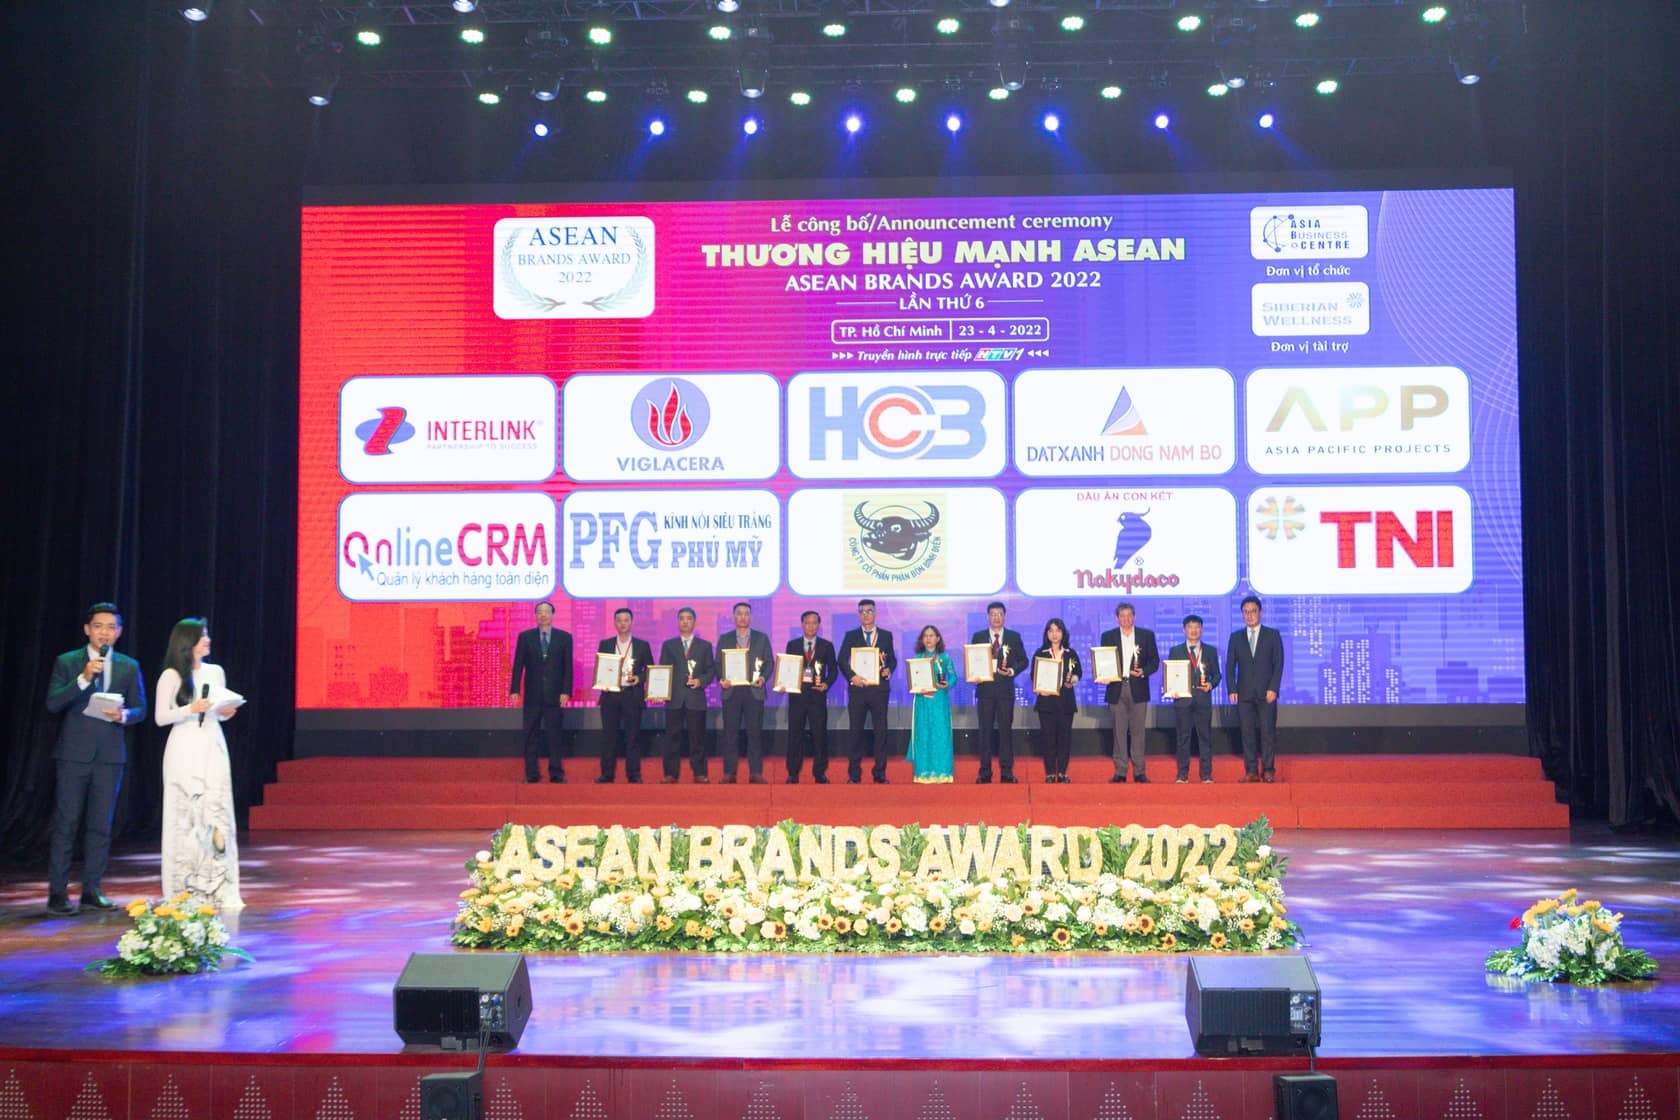 CloudGO nhận giải thưởng TOP 10 thương hiệu mạnh ASEAN 2022